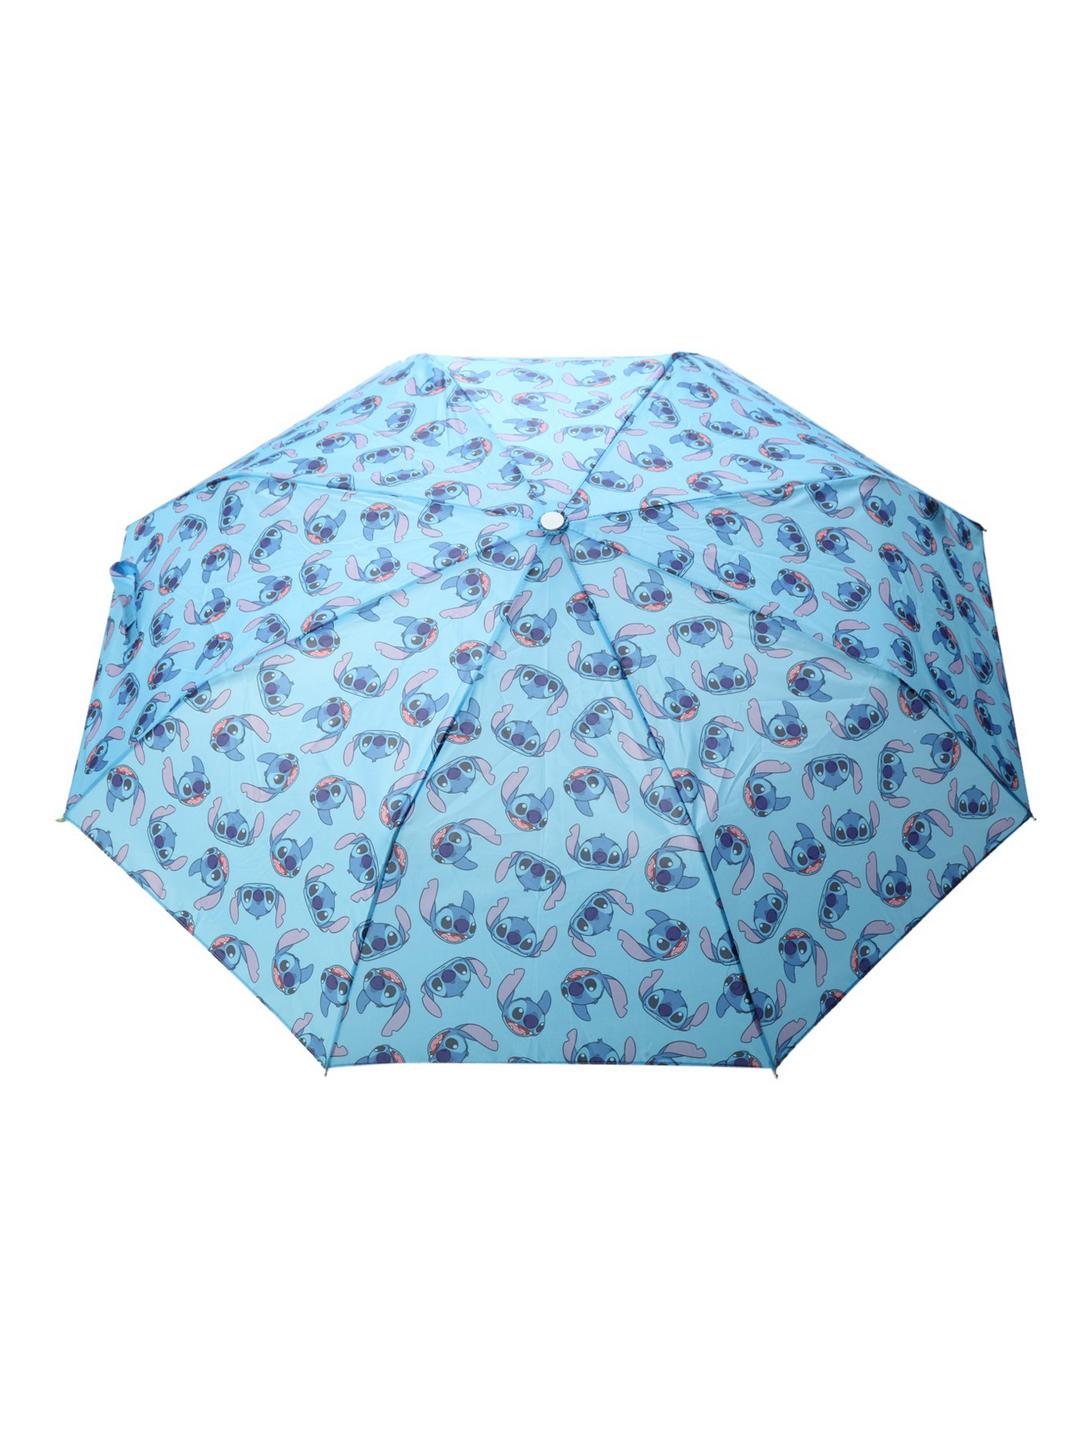 Disney Lilo & Stitch Print Compact Umbrella, , hi-res